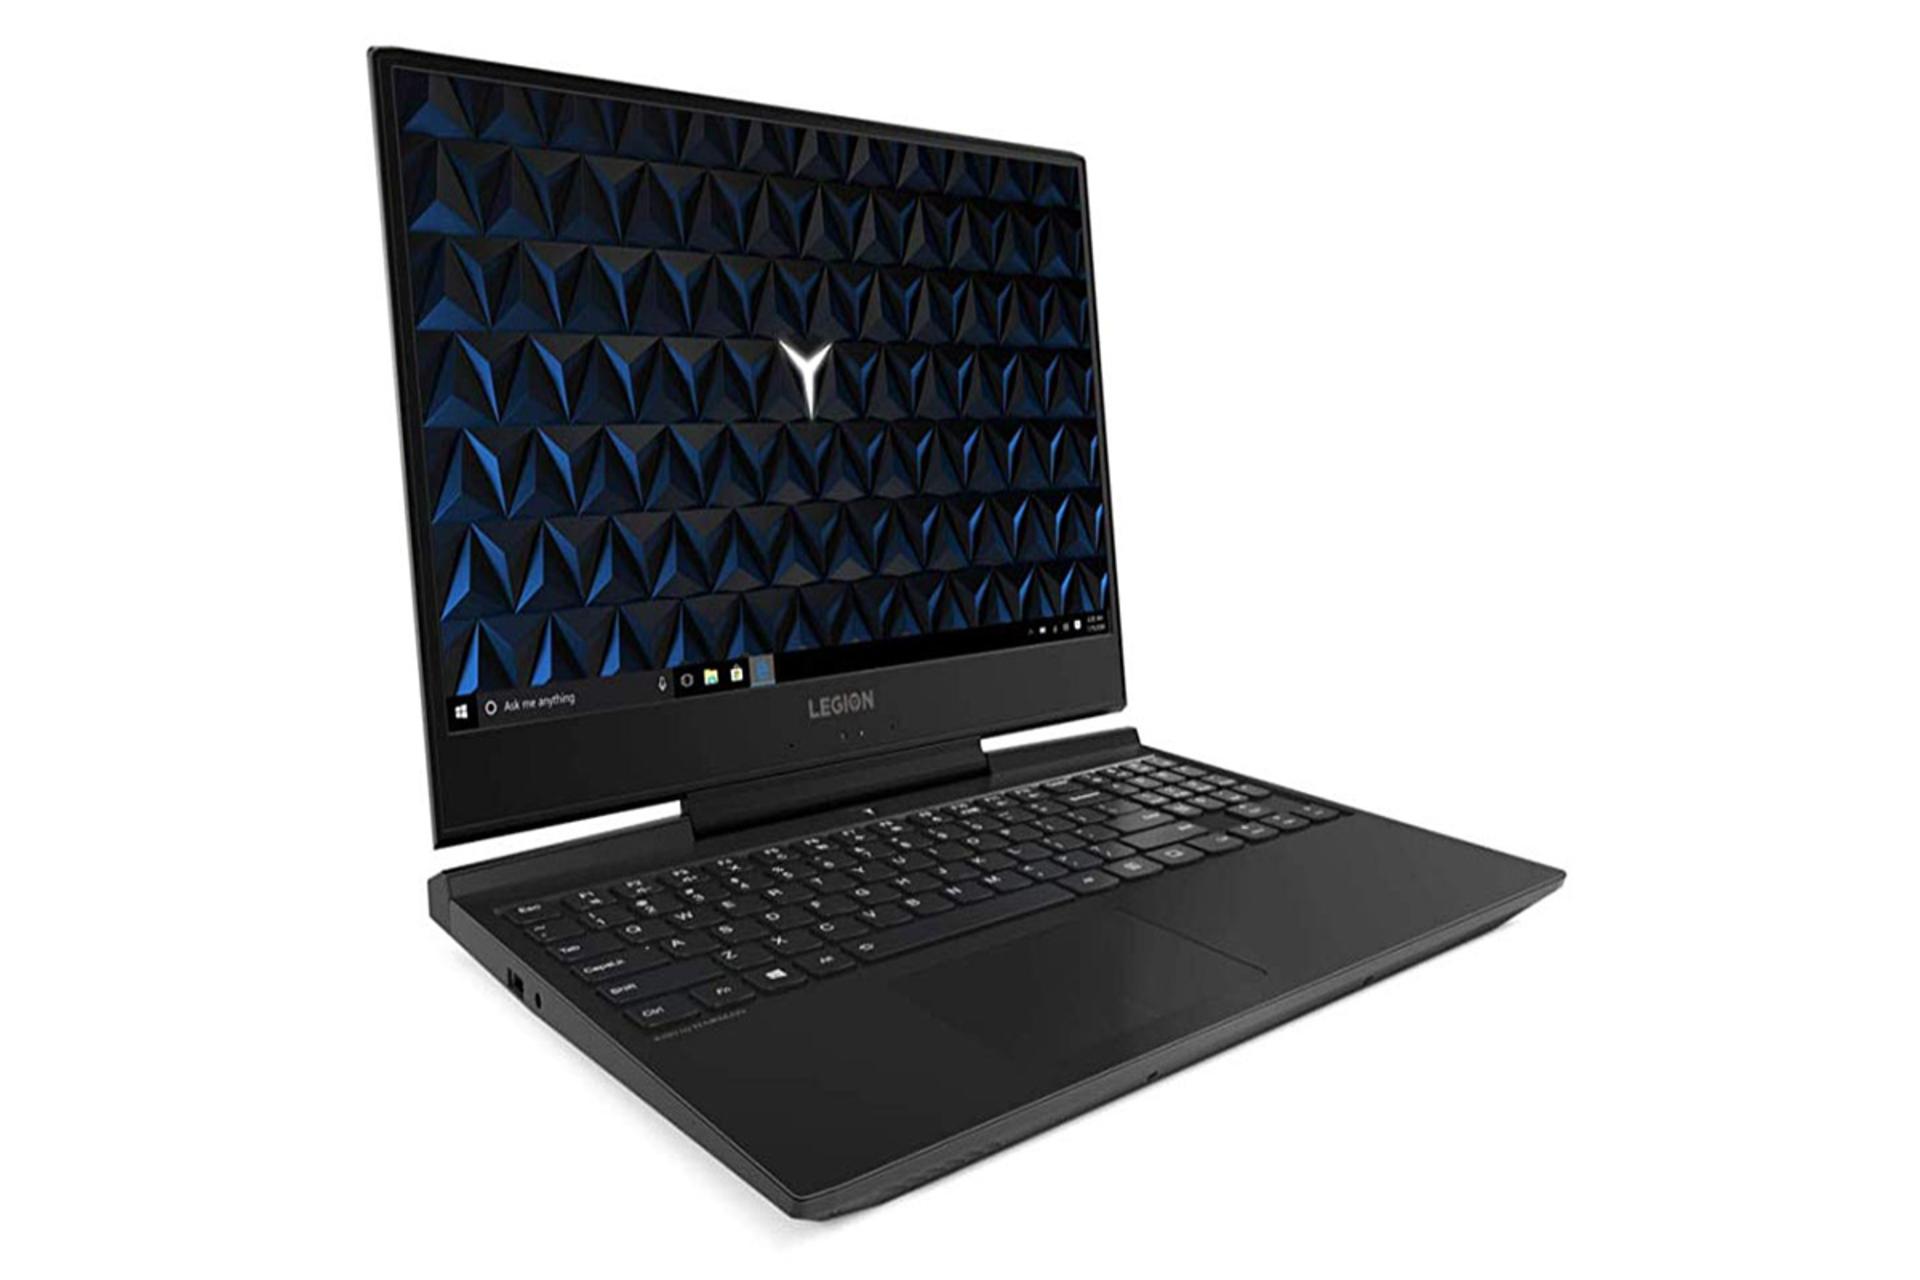 لپ تاپ لنوو لیژن 7000 از نمای نیمرخ